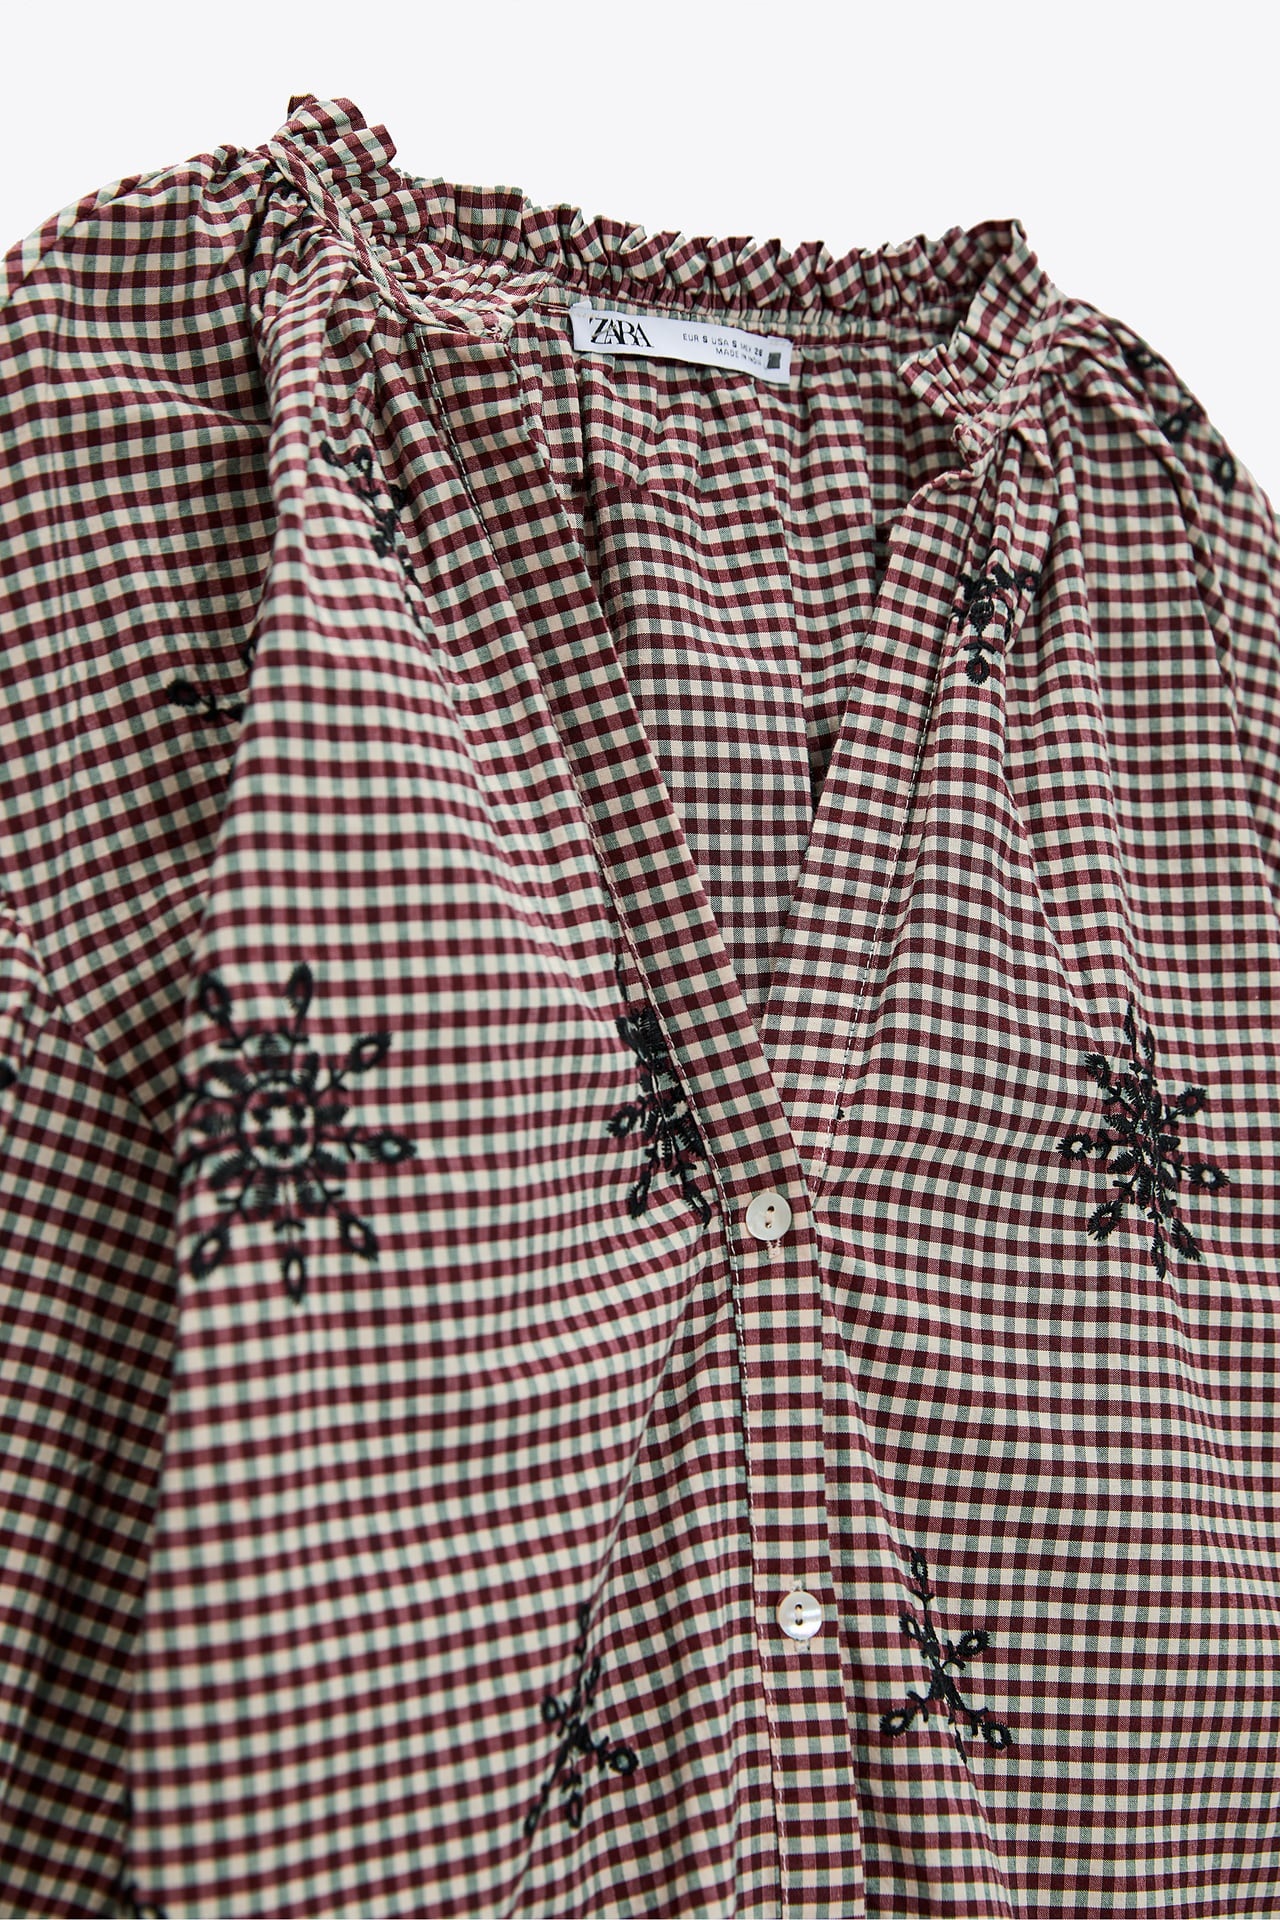 Zara: Amelia Bono llevar la blusa original y deseada